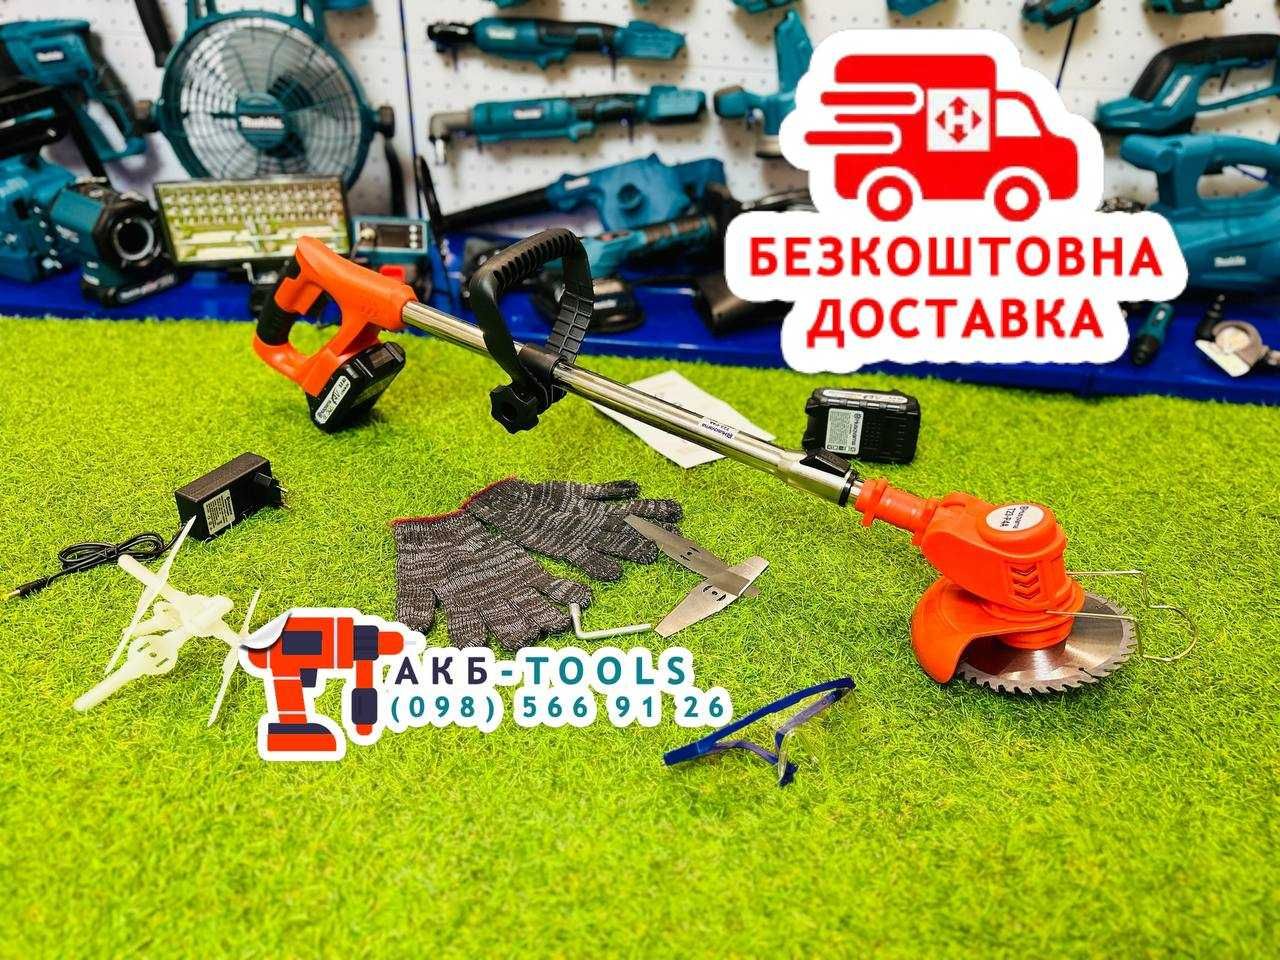 Аккумуляторный триммер Хосварна 24/5 мотокоса для травы Косарка АКБ